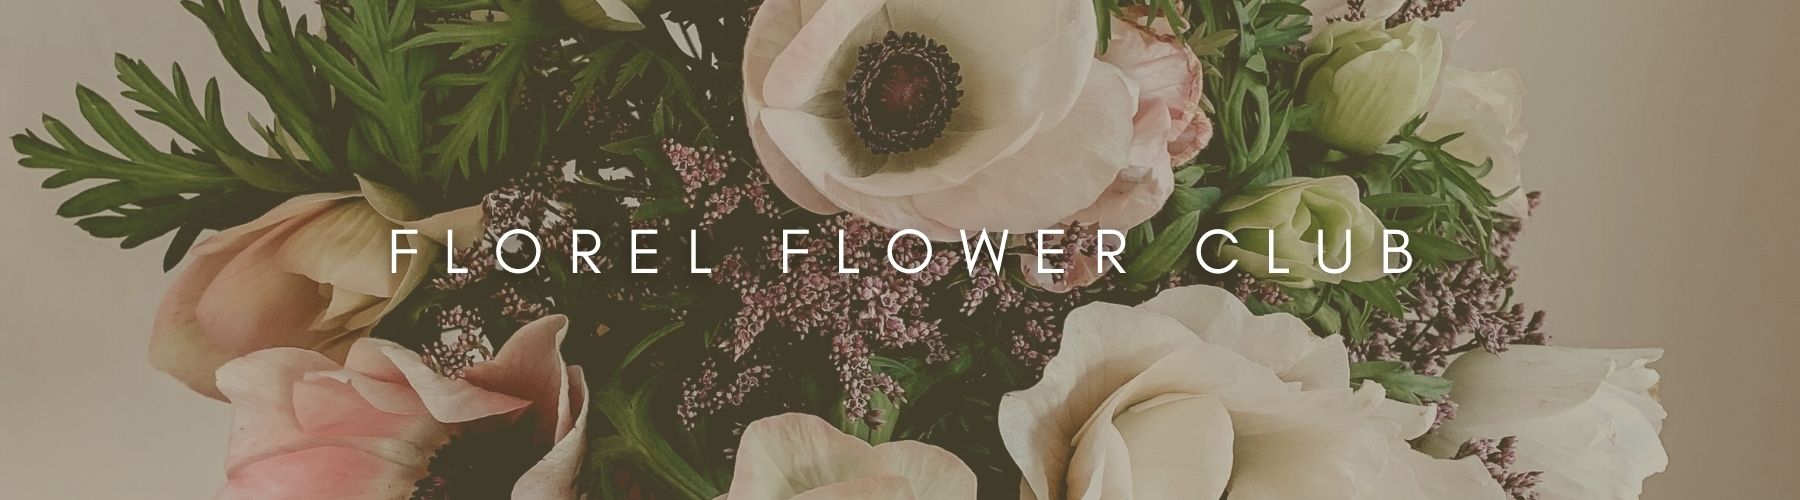 Newsletter florel flower club letter